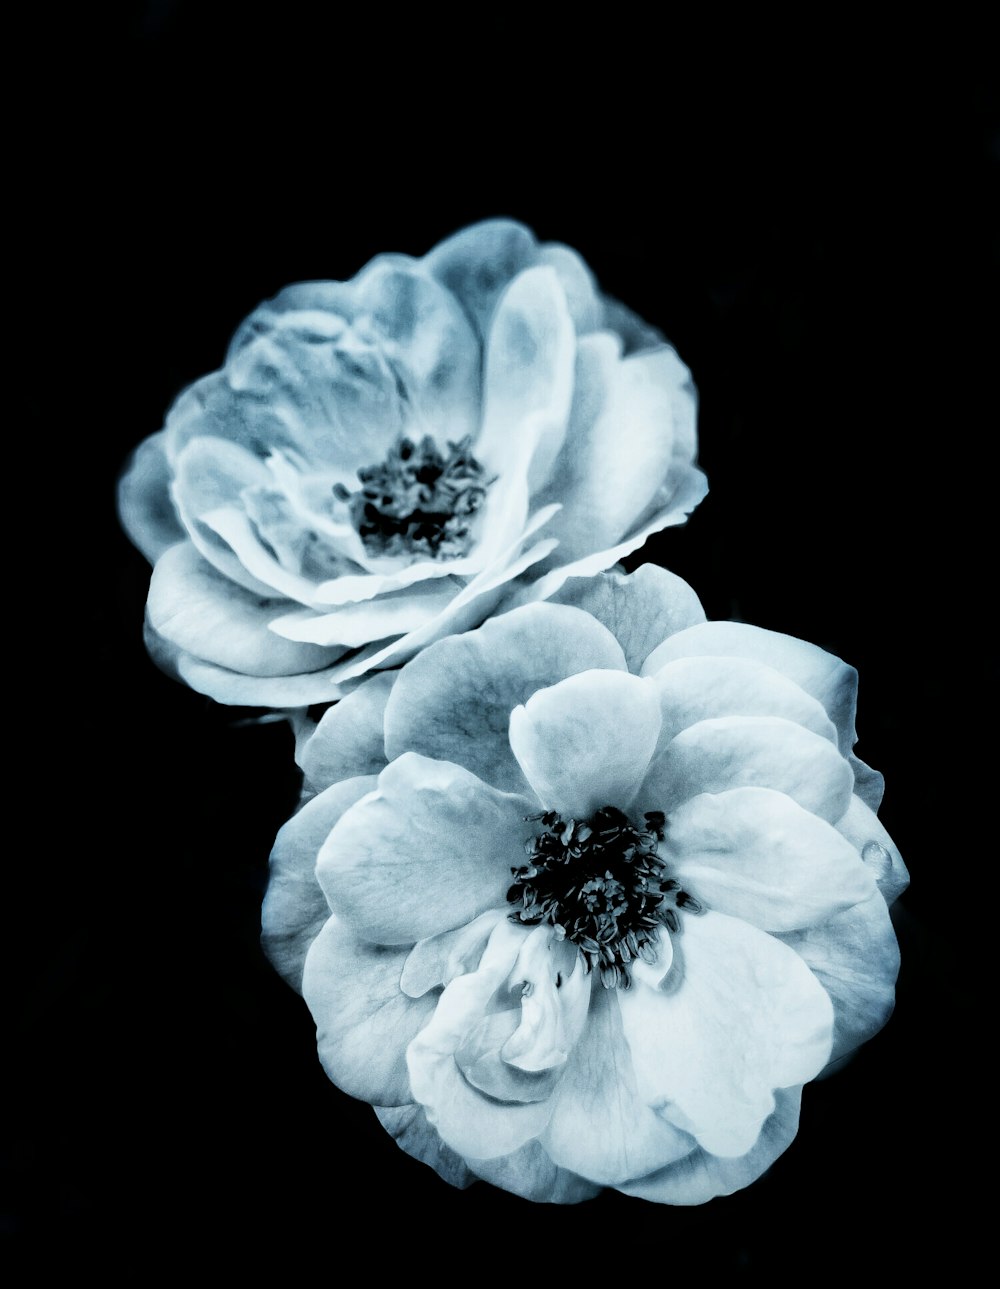 fleur blanche sur fond noir photo – Photo Bleu Gratuite sur Unsplash